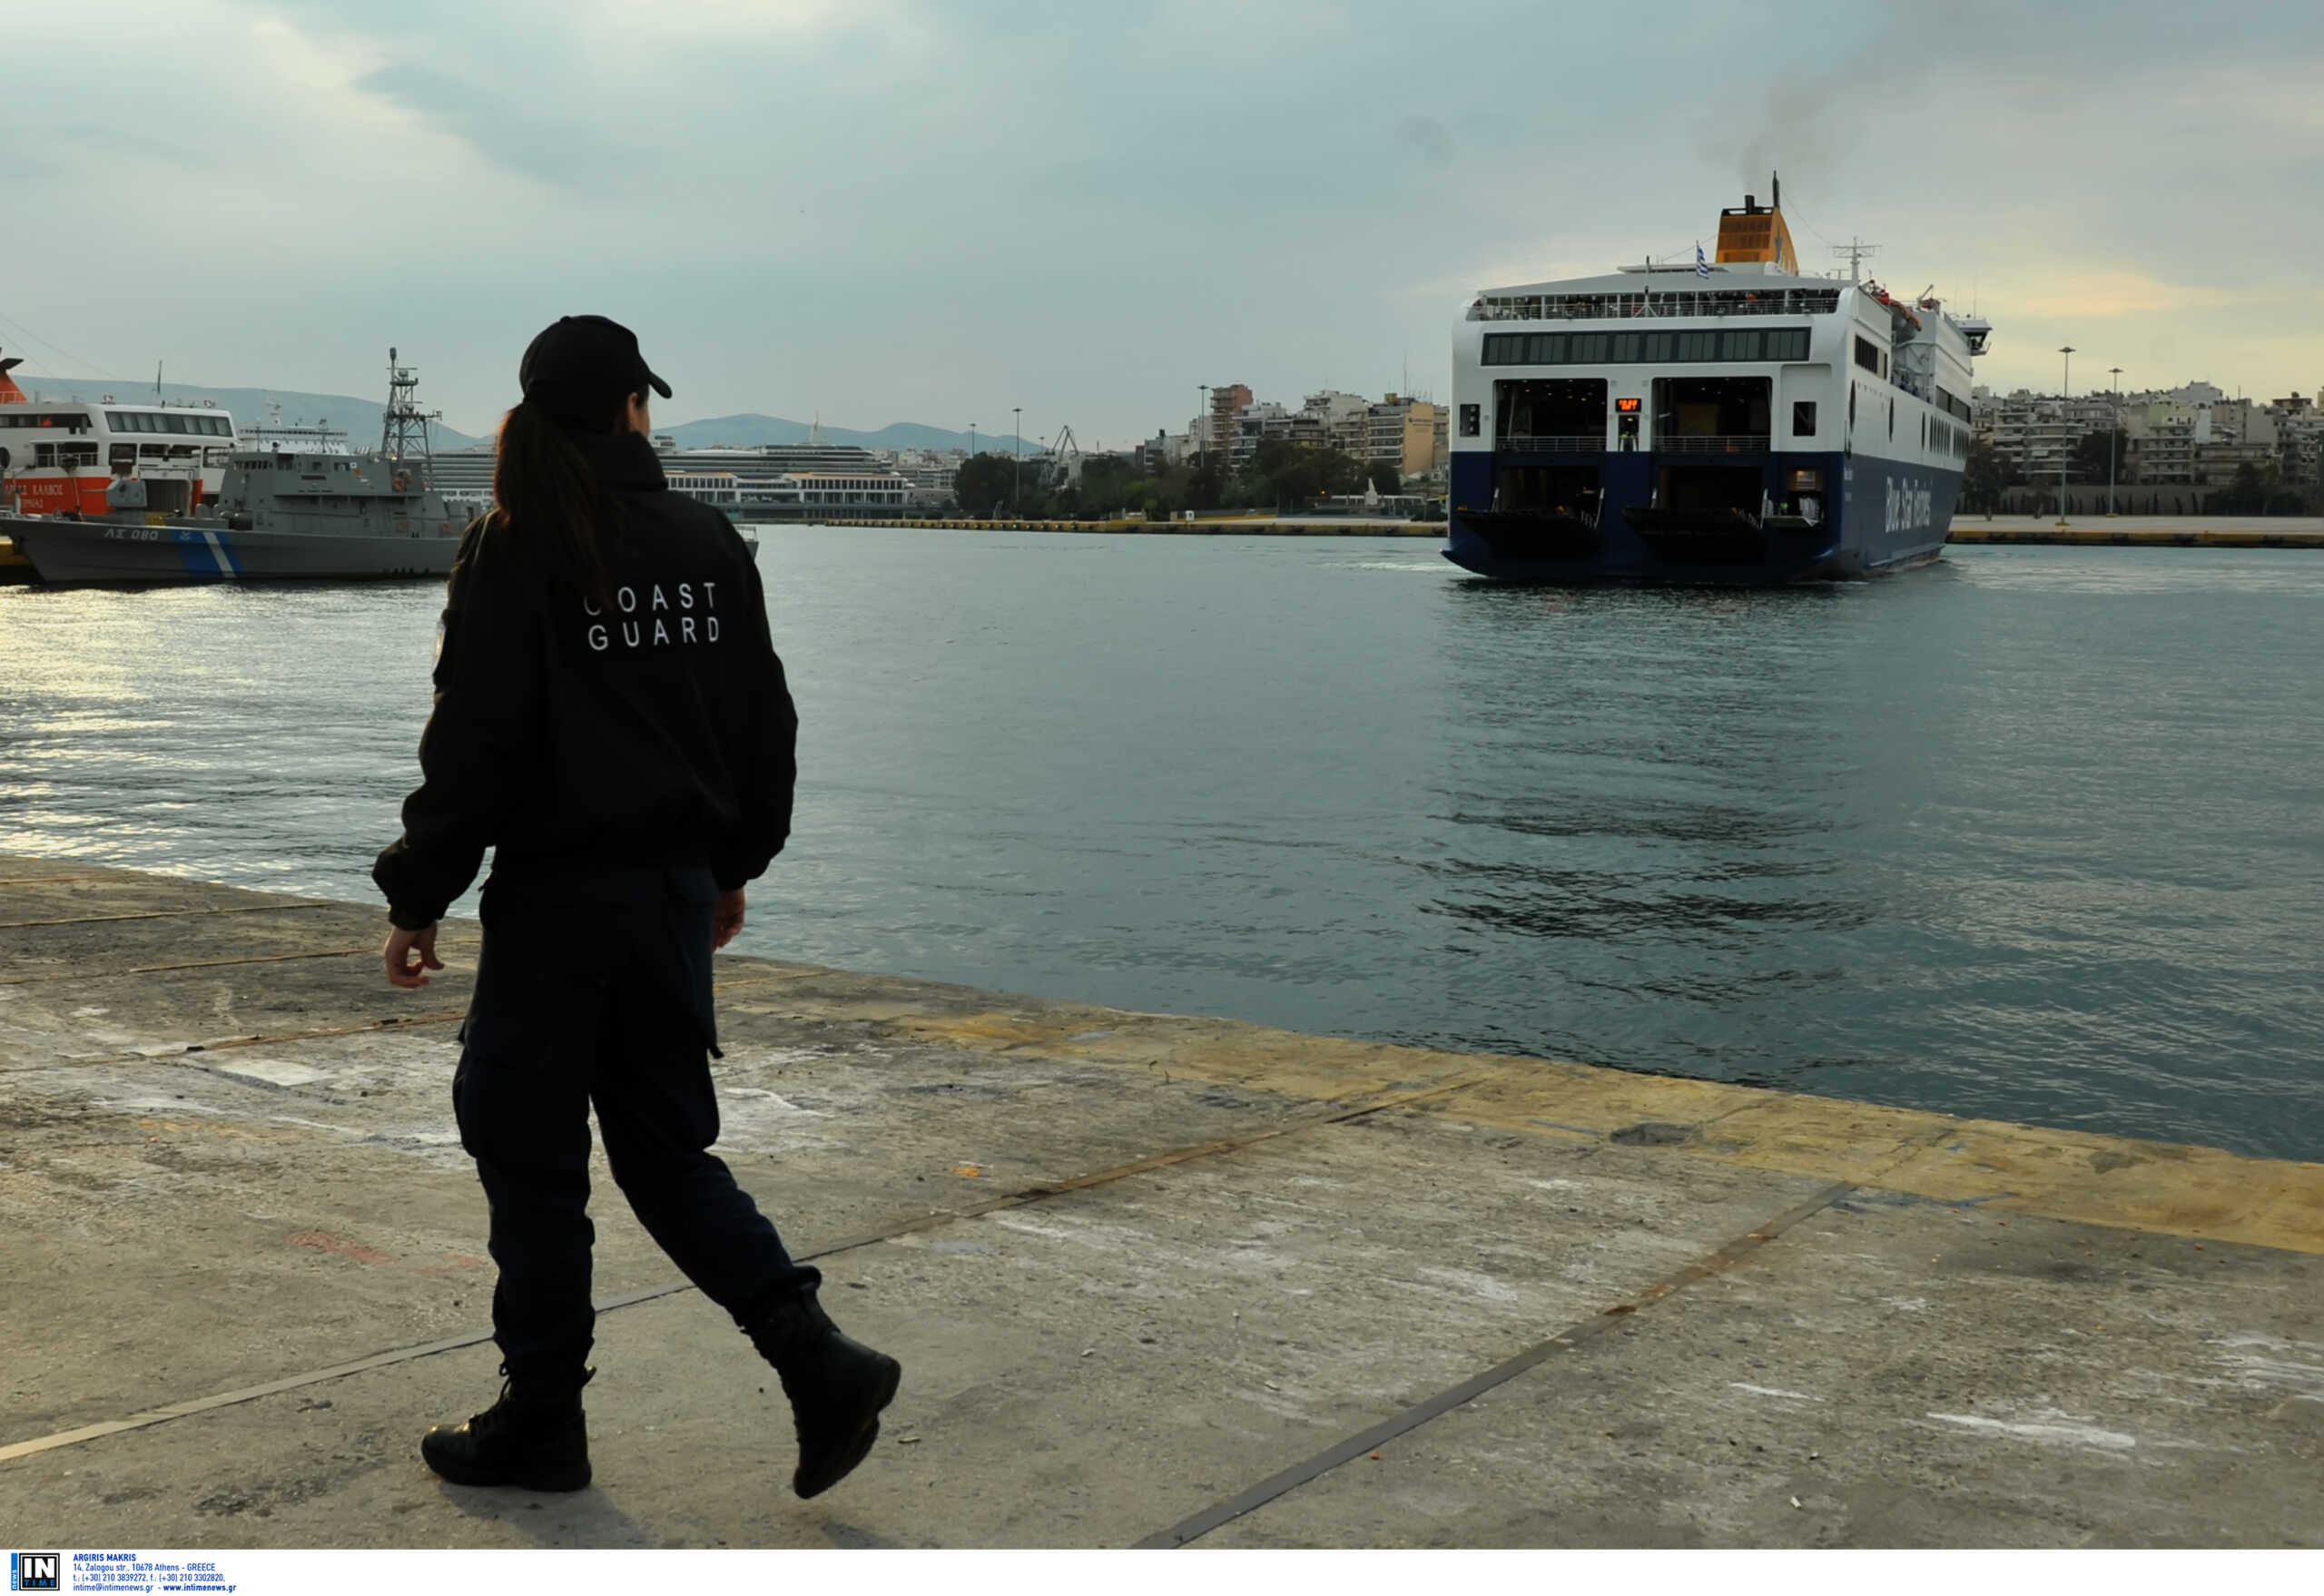 Μυτιλήνη: Απευθείας σύνδεση με την Σμύρνη – Έφτασε στο λιμάνι το πρώτο καραβάκι από την Τουρκία